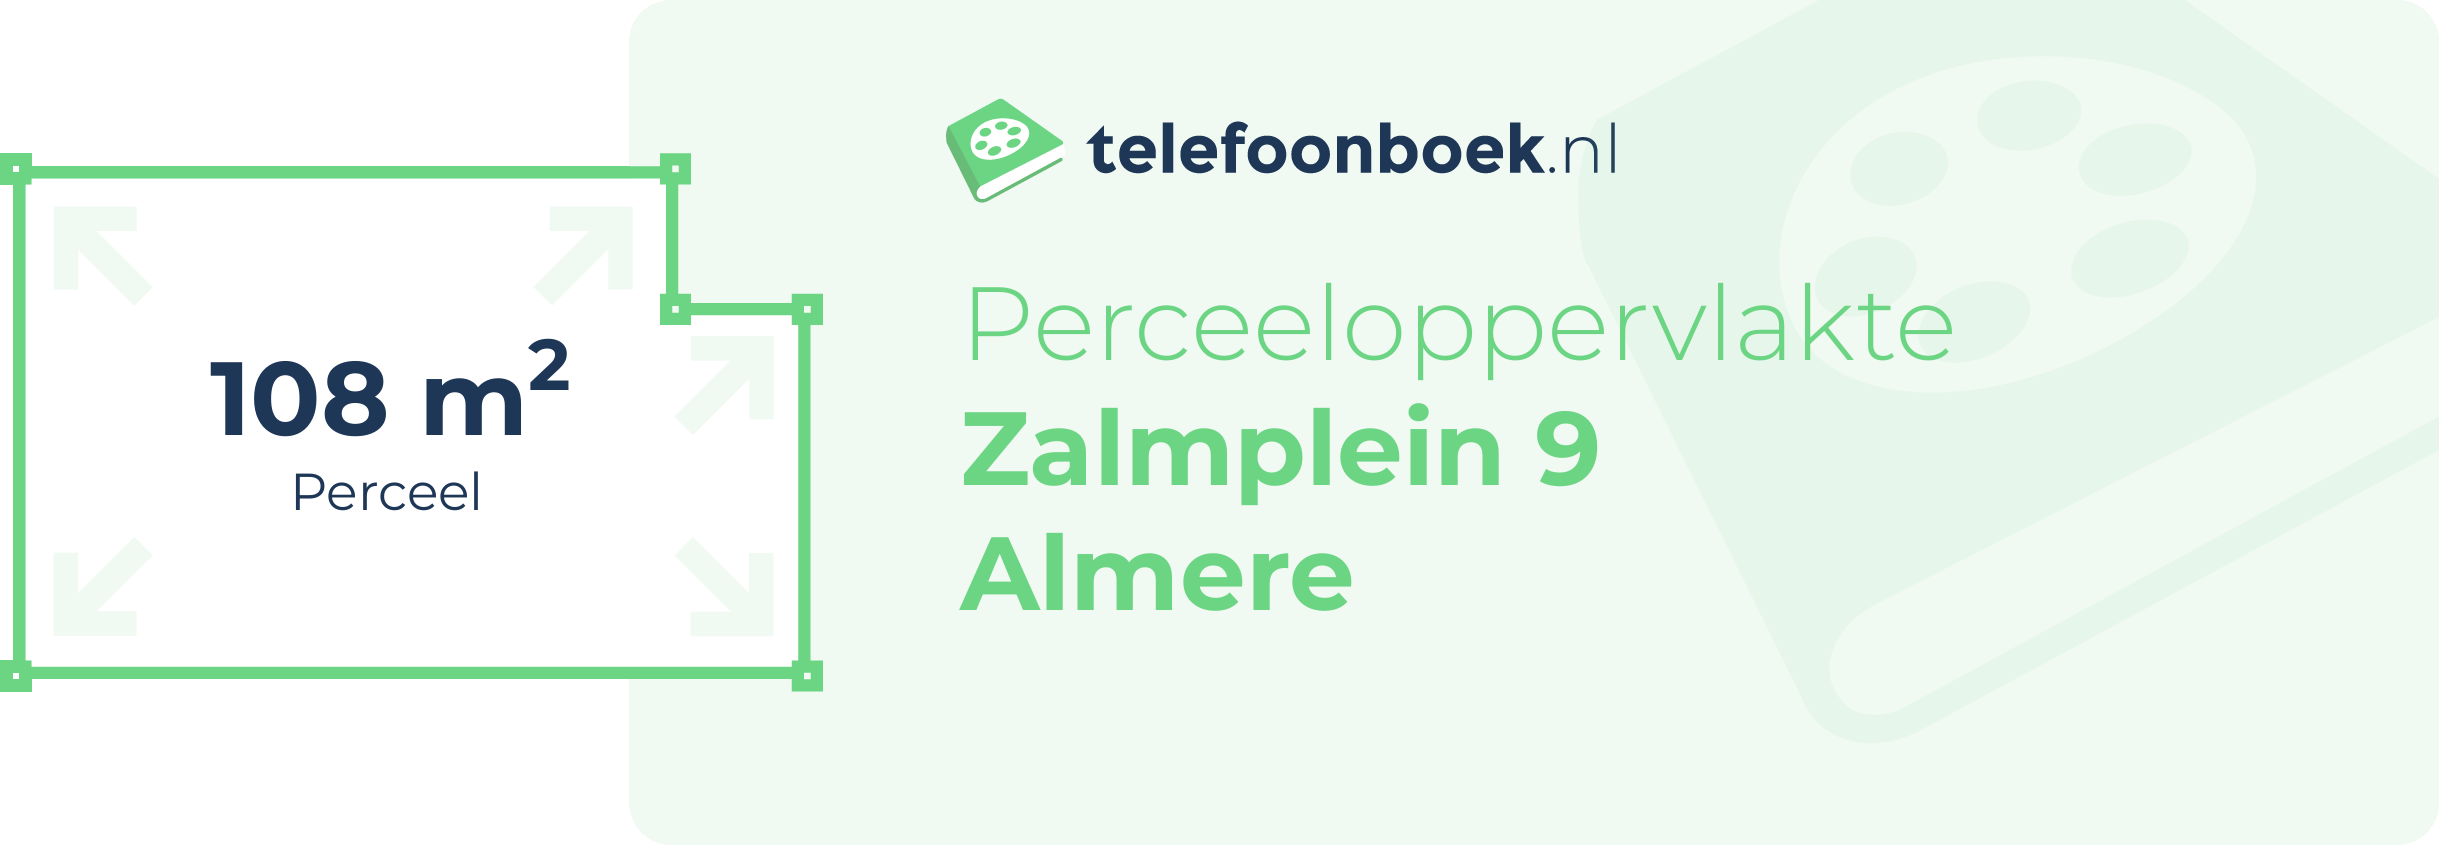 Perceeloppervlakte Zalmplein 9 Almere